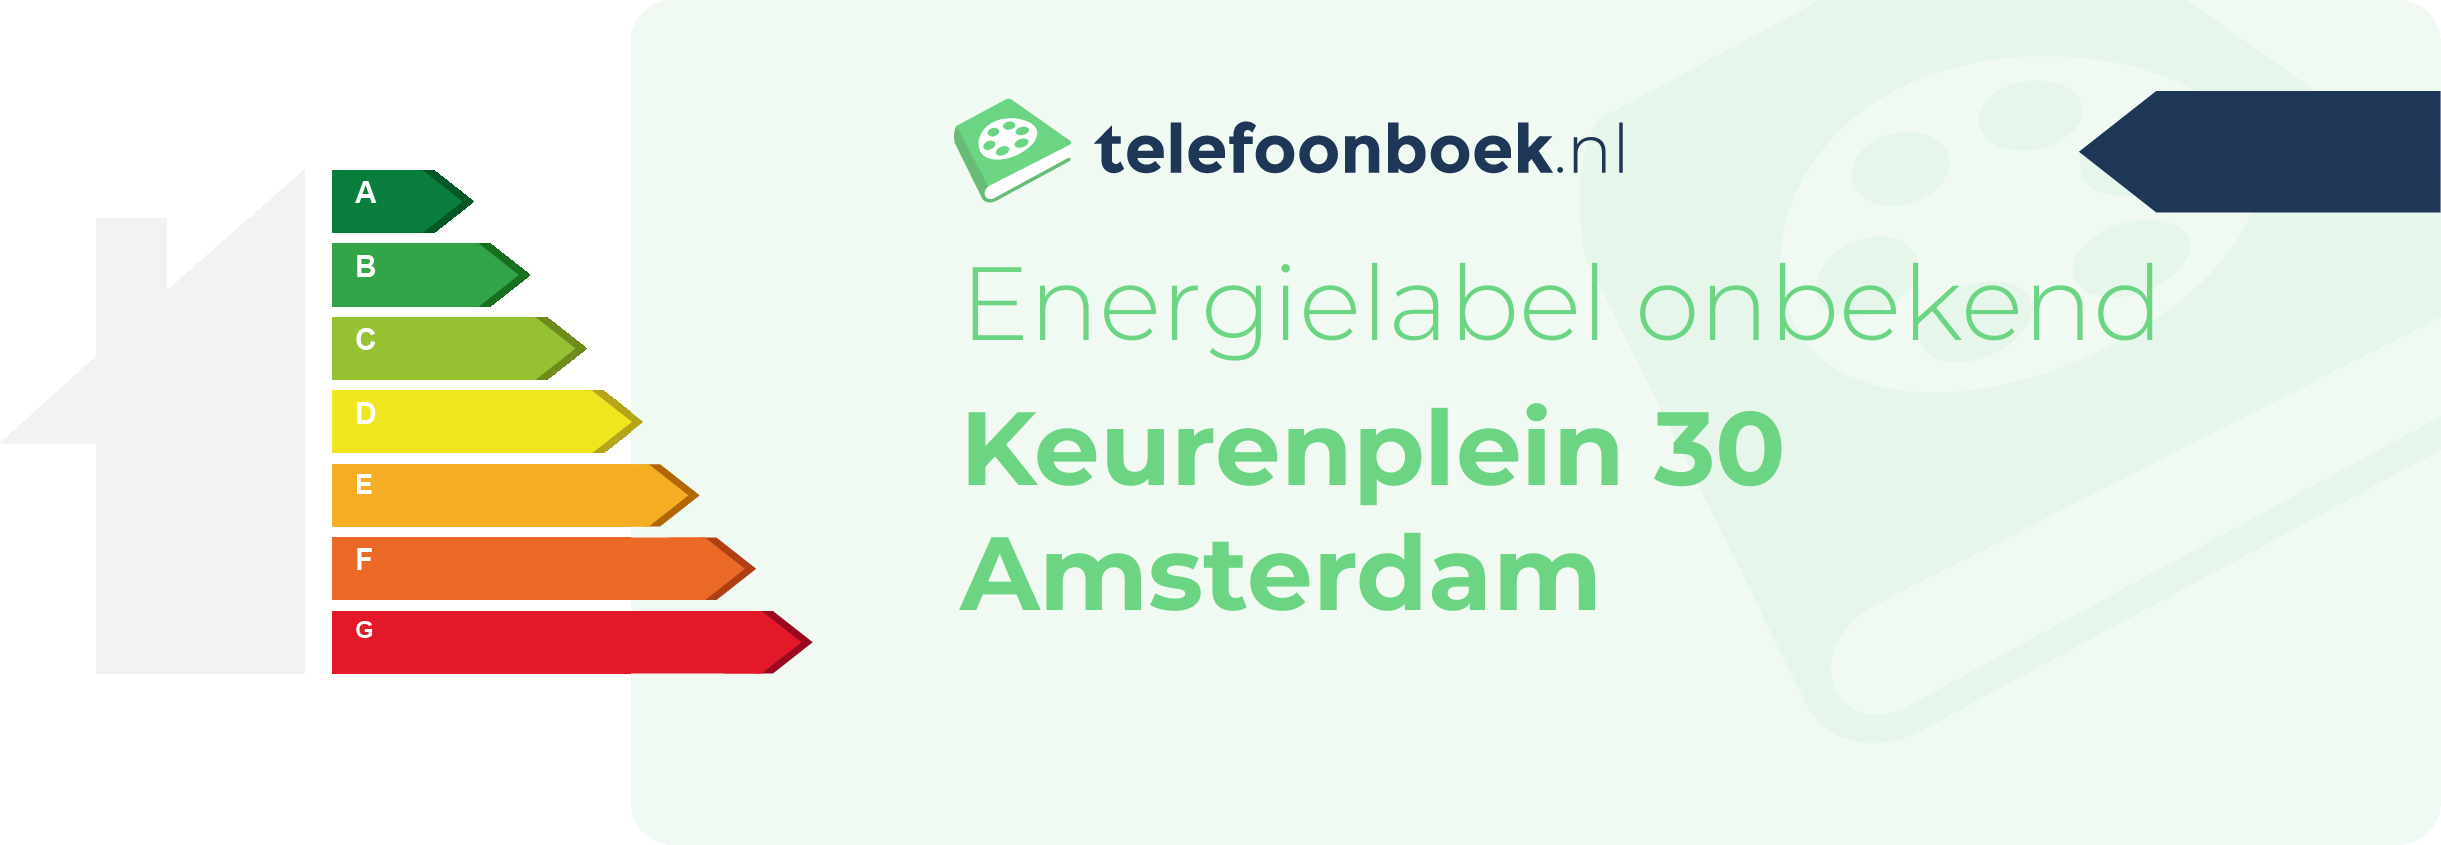 Energielabel Keurenplein 30 Amsterdam